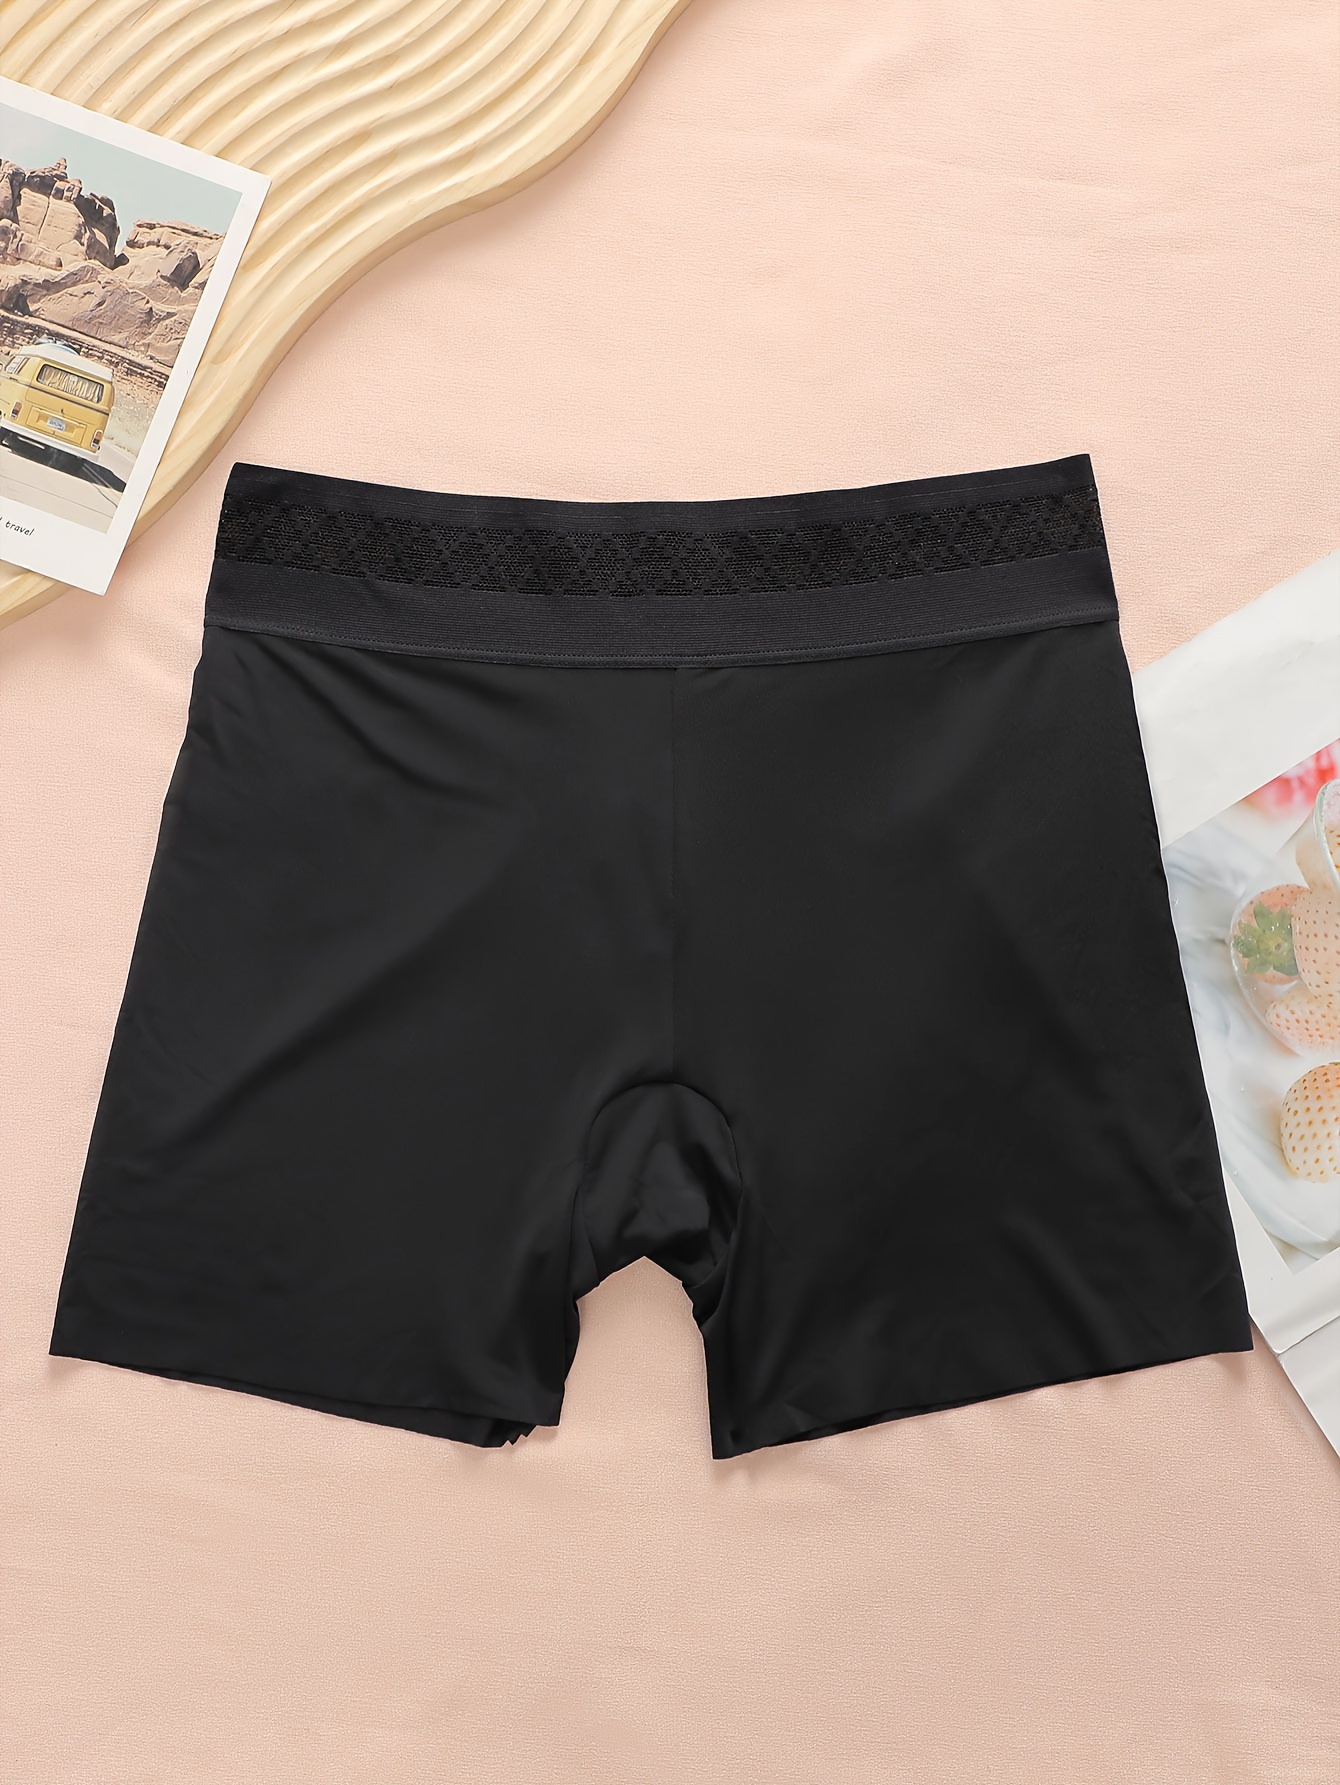 5pcs Solid Color Boyshort Panty, Intimates Boxer Shorts, Women's Lingerie &  Underwear